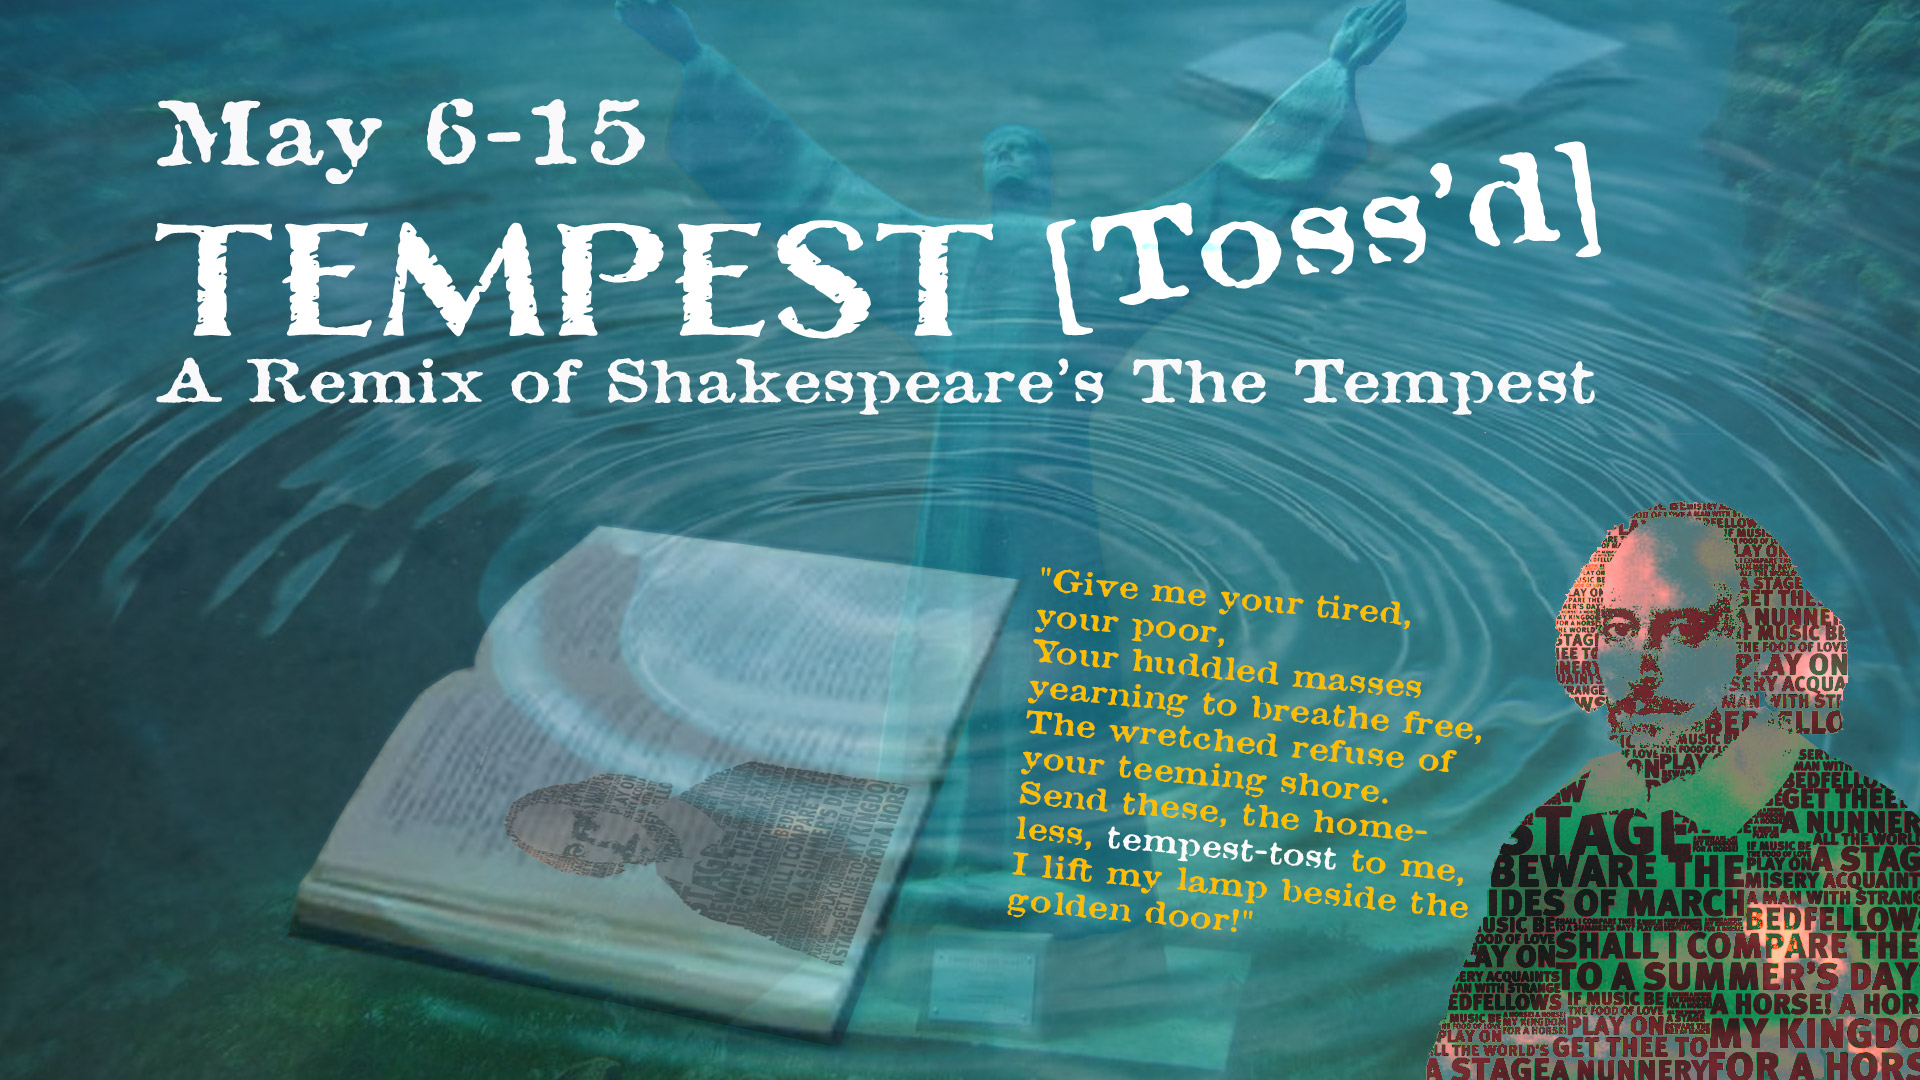 Tempest [Toss'd]